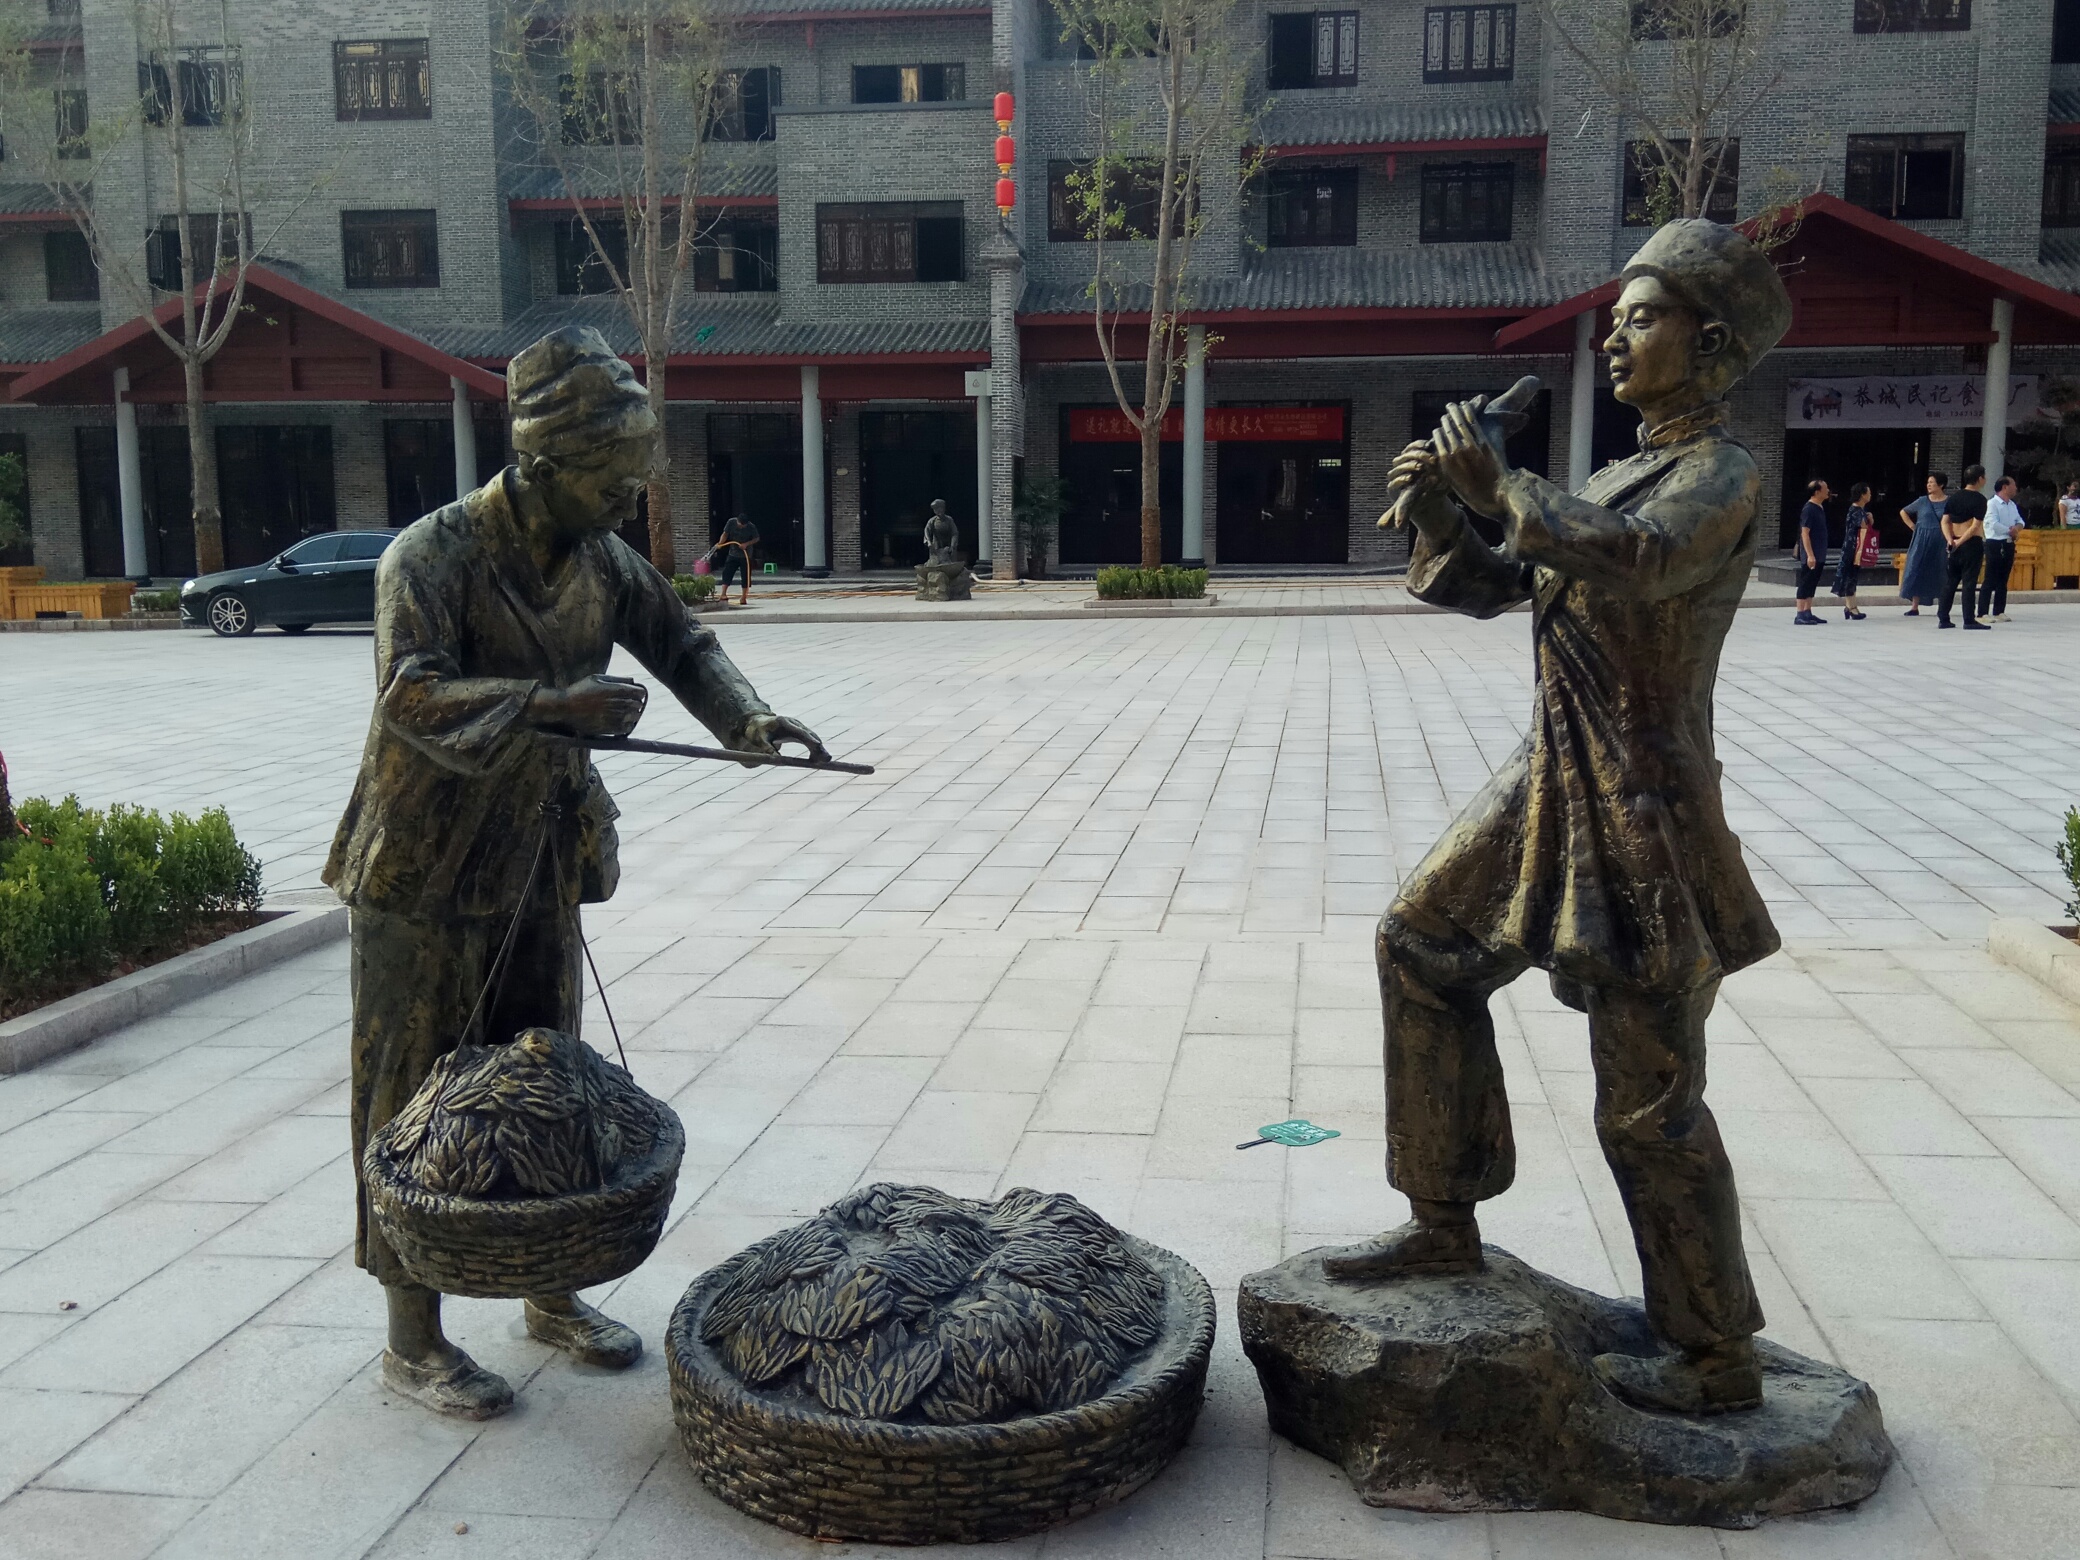 ——油茶小镇的瑶人雕塑425 / 作者:力行者 / 帖子ID:276336